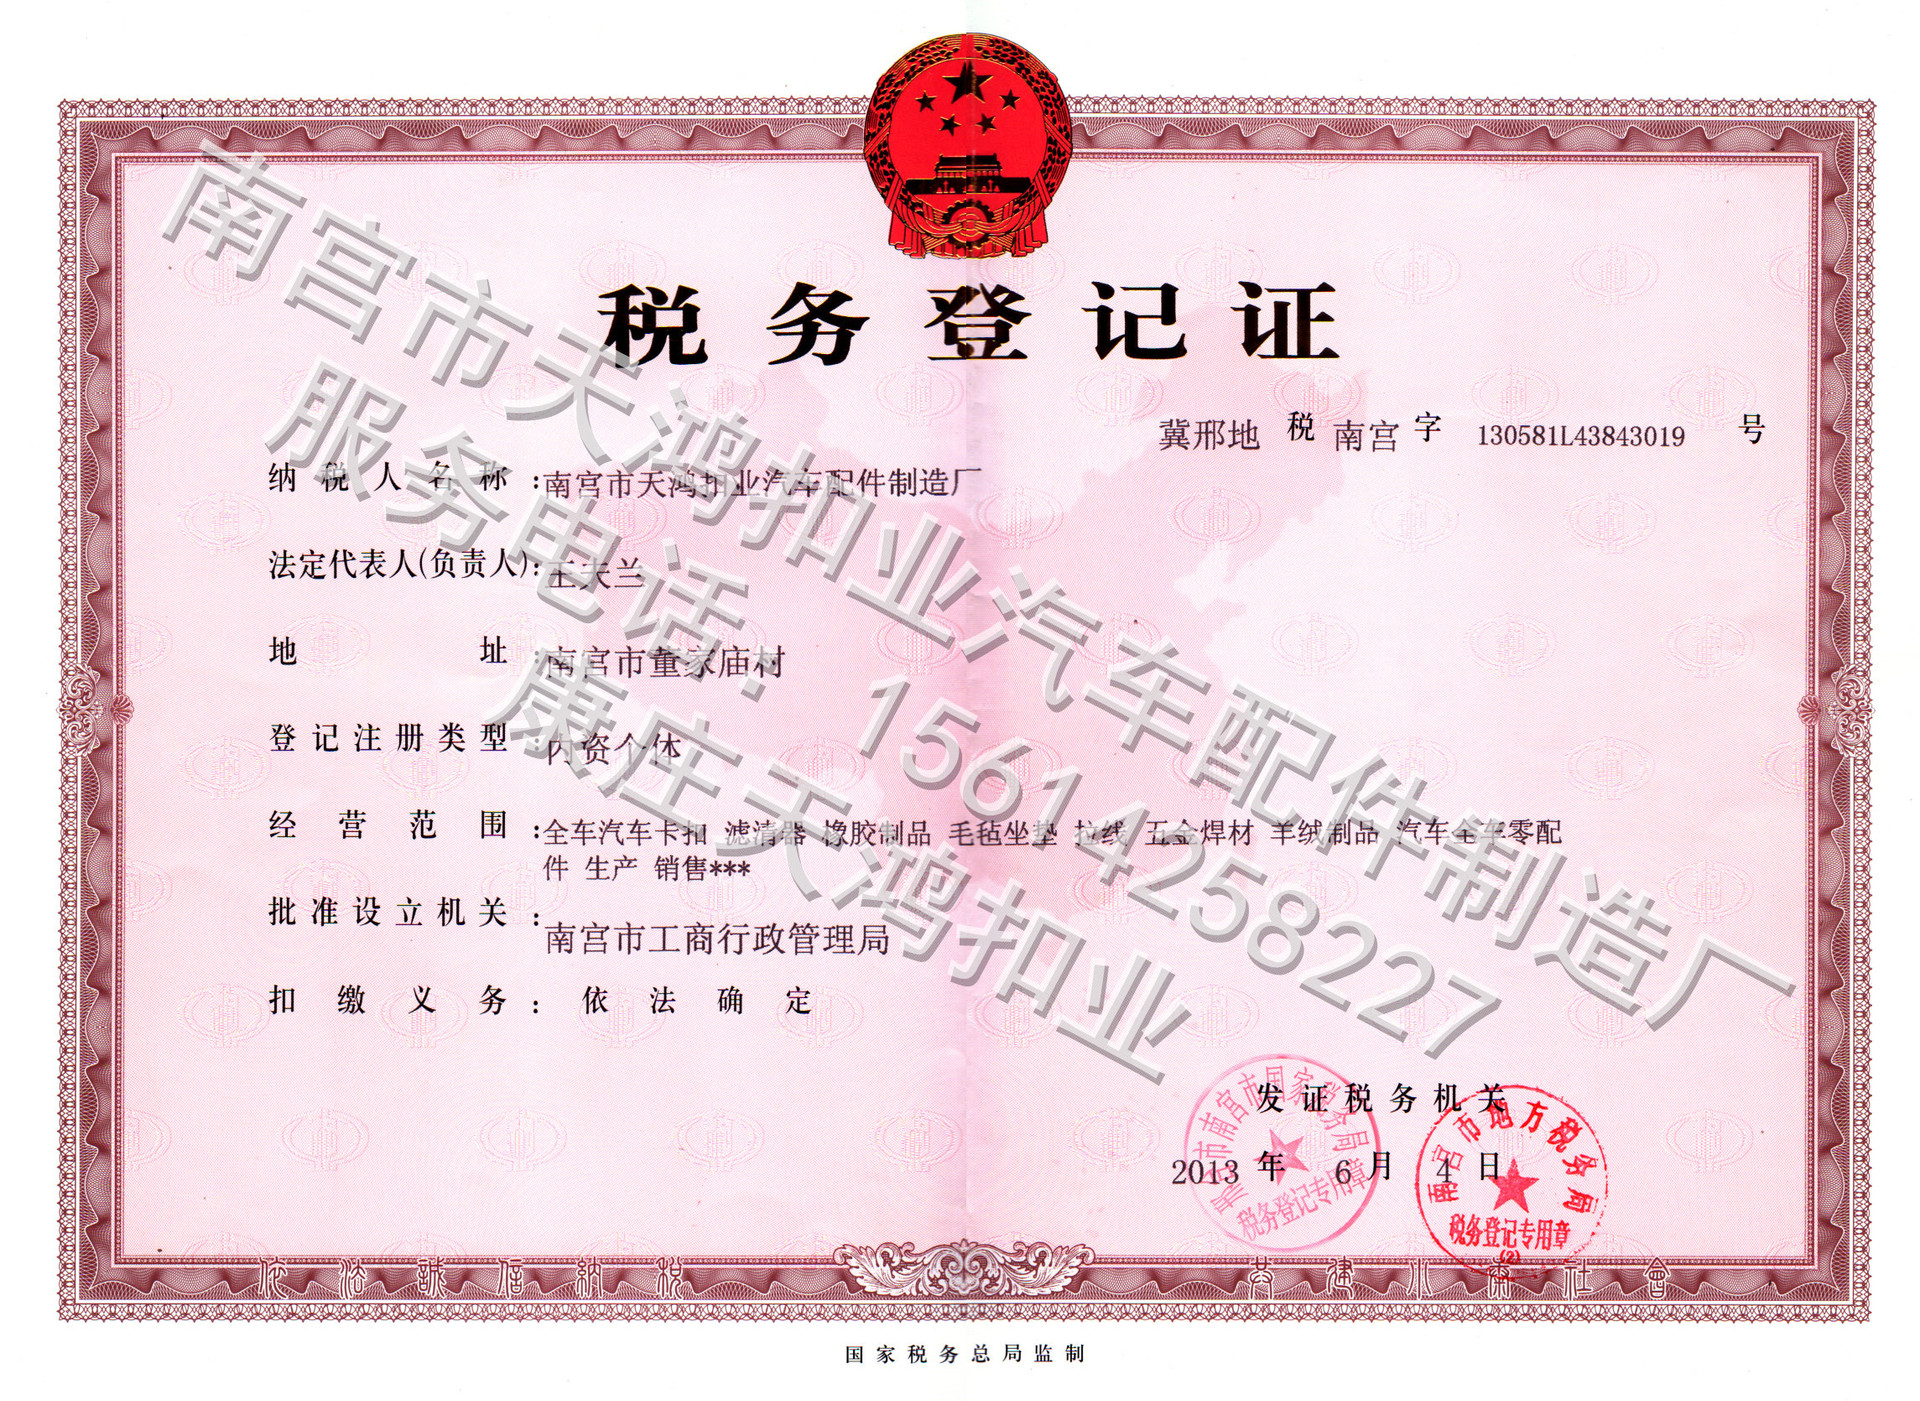 Сертифікат податкової реєстрації податкової реєстрації на фабрику виробництва автомобільних аксесуарів у місті Тяньхонг, місто Нангонг